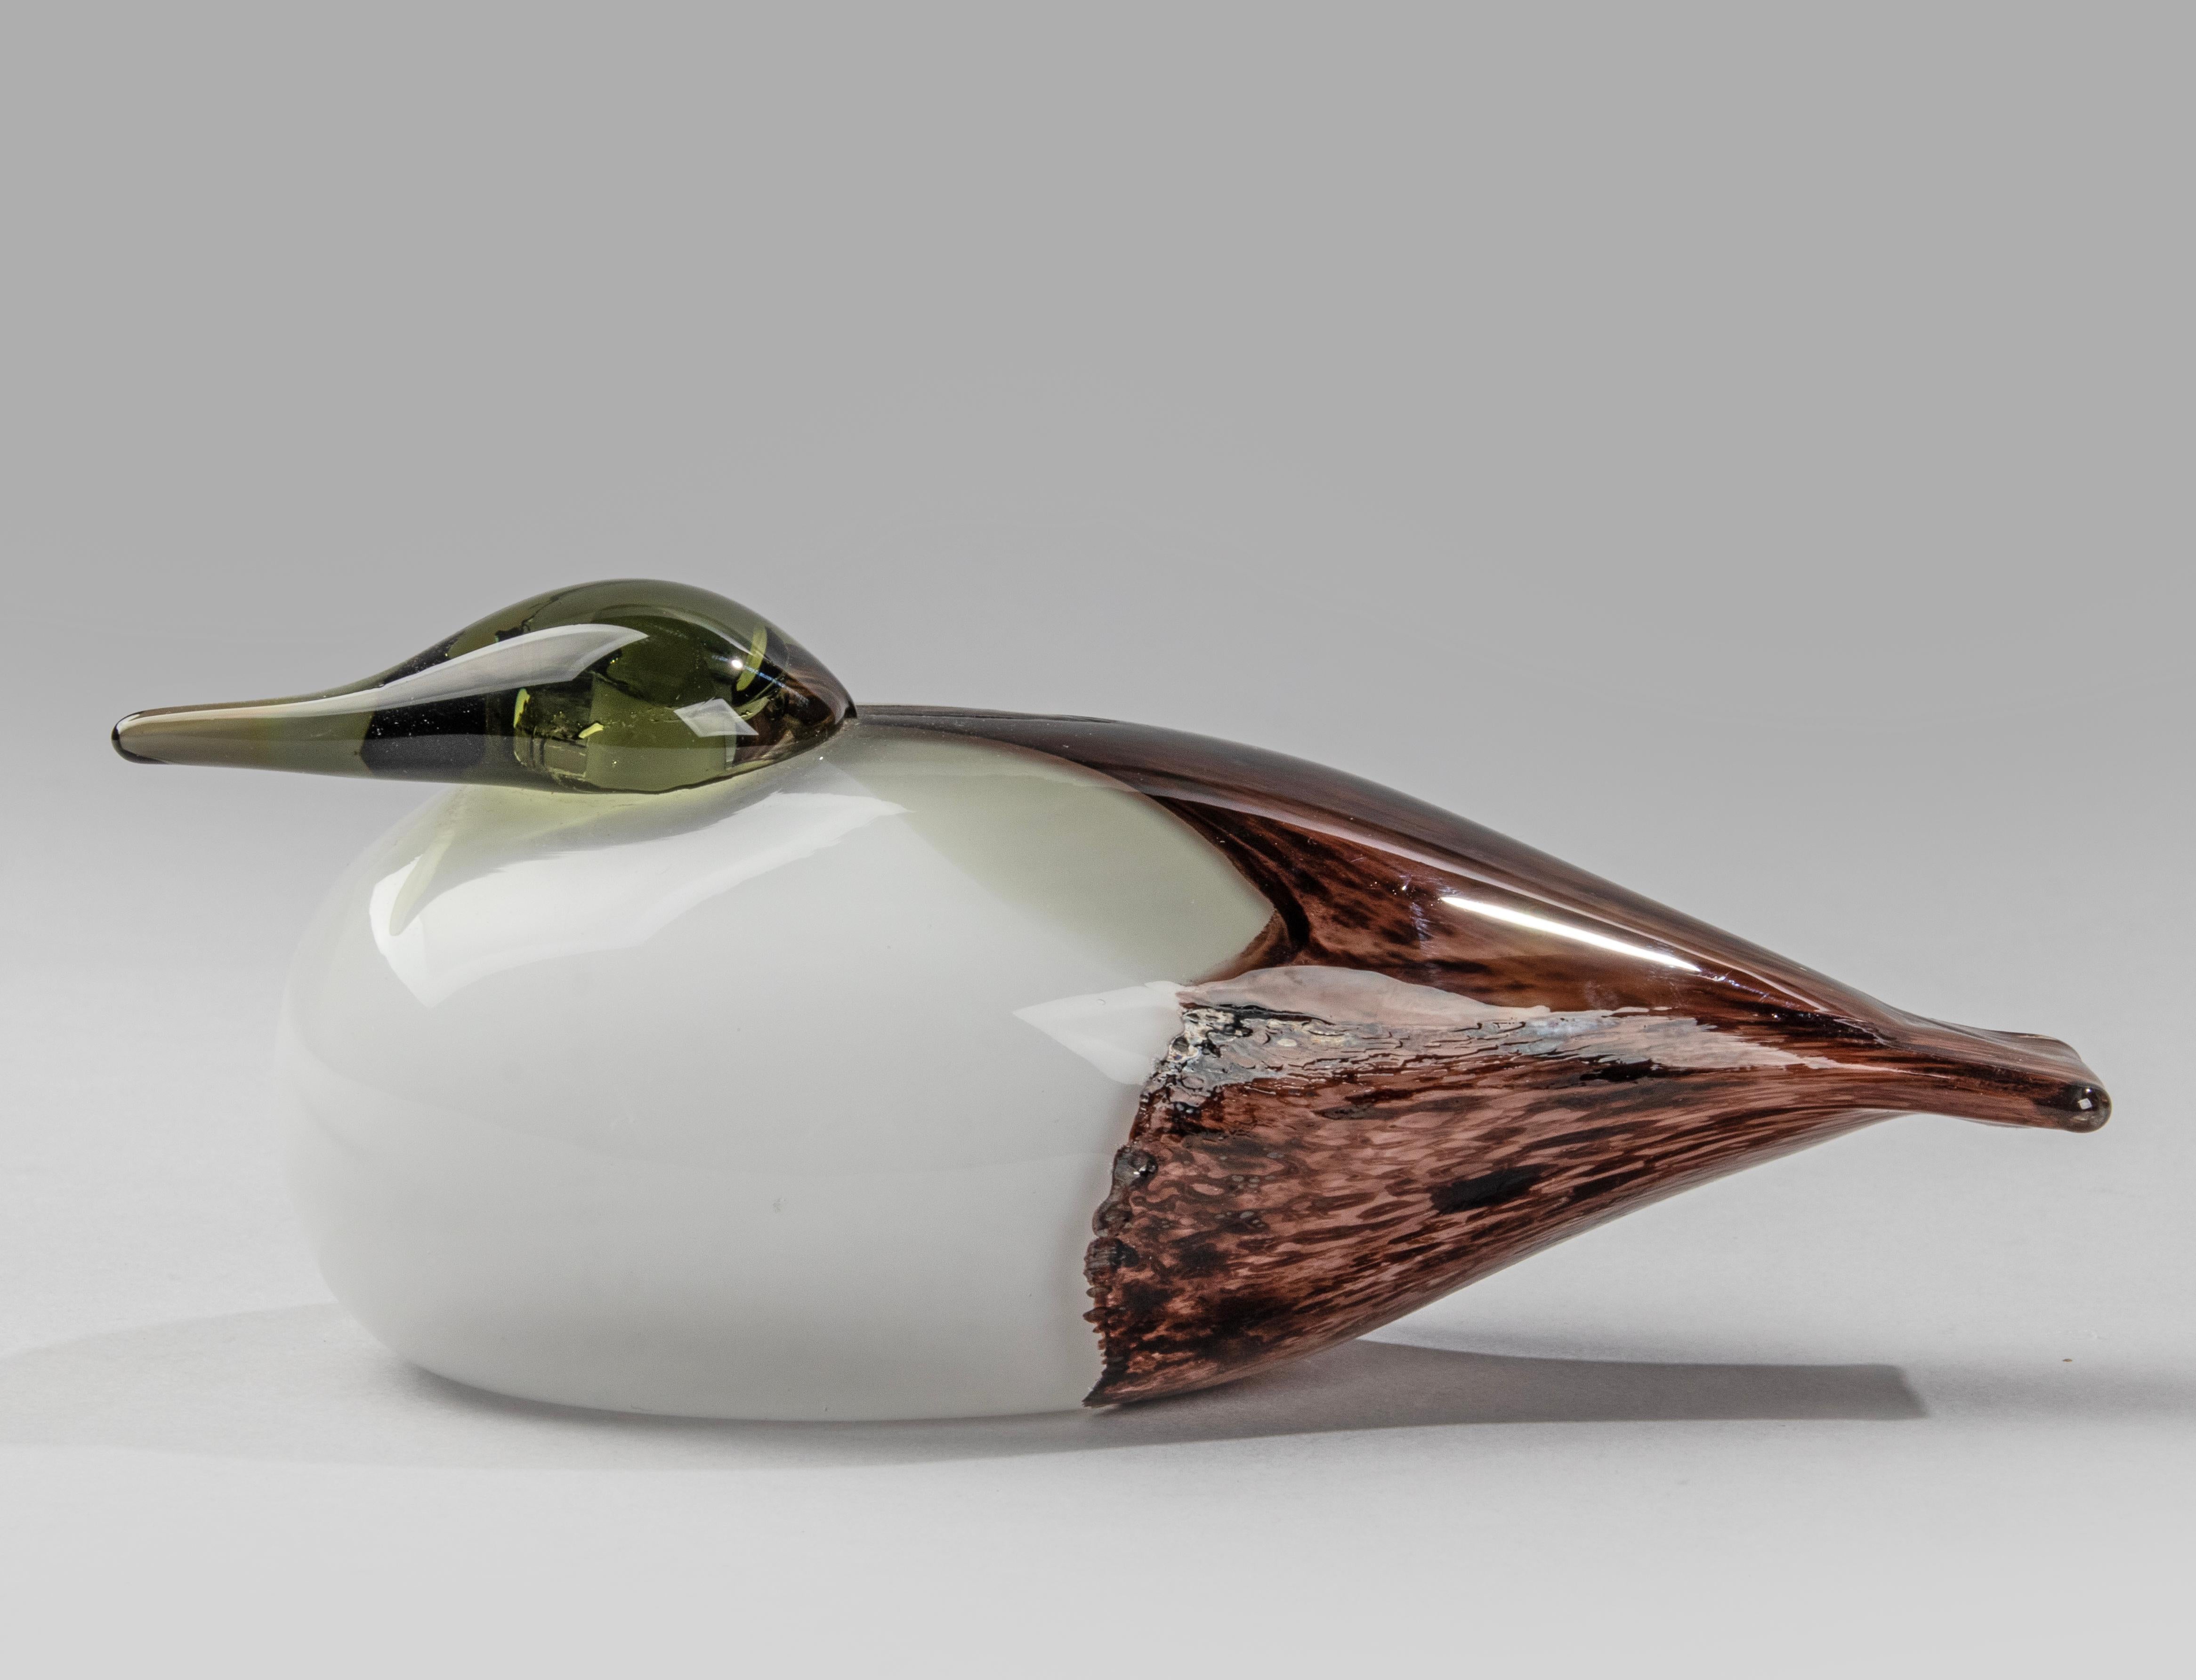 Ein hübscher Vogel aus Kunstglas, hergestellt von Nuutajärvi Notsjõ, entworfen von Oiva Taikko. 
Dieser Vogel hat eine schöne Komposition von Farben. Signiert auf dem Boden und dem Original Label. 
In sehr gutem Zustand.